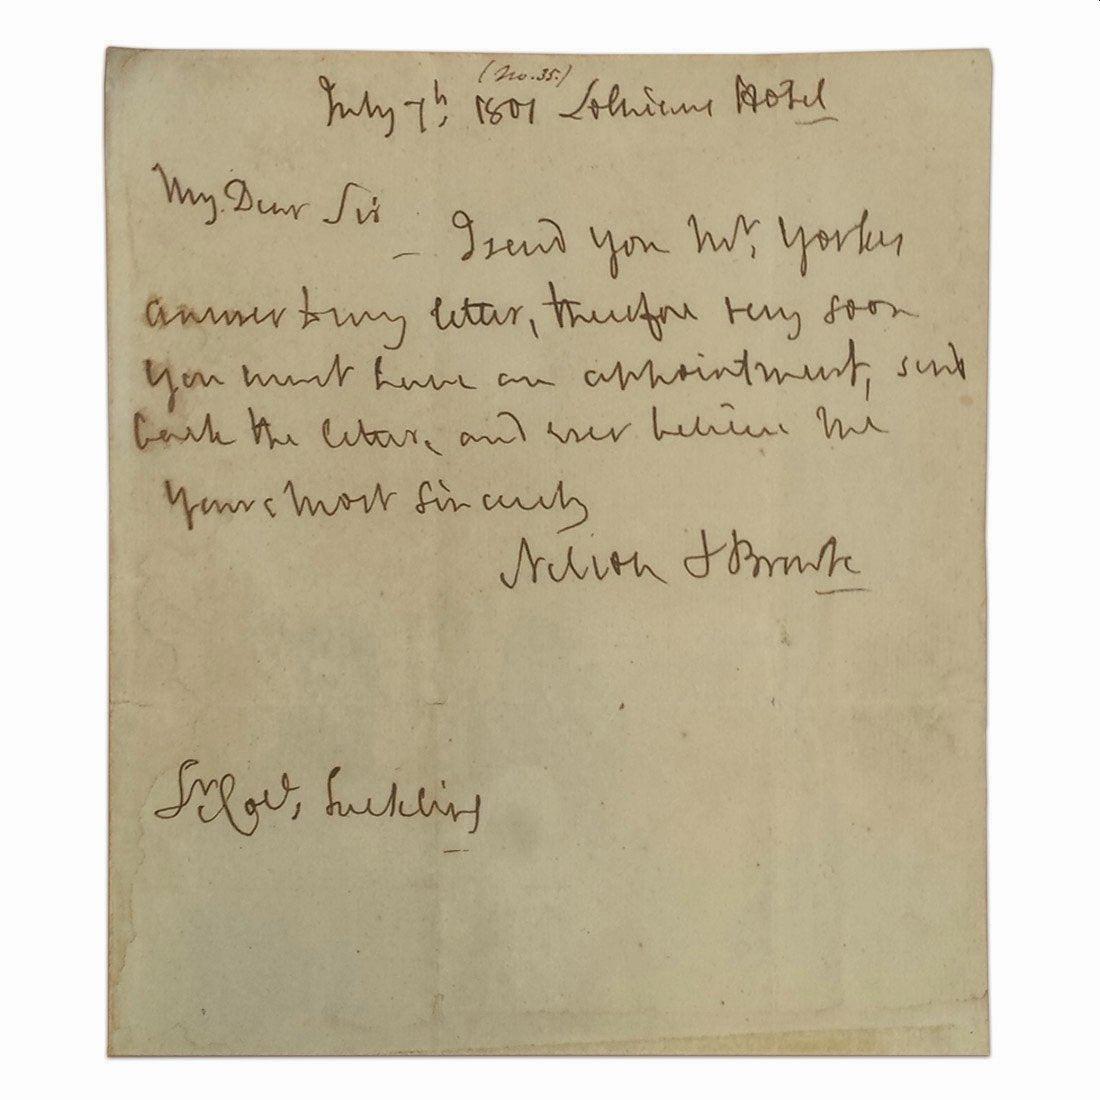 Note manuscrite de l'amiral Horatio Lord Nelson, datée du 7 juillet 1801.

L'amiral Lord Horatio Nelson (1758-1805) était un officier de marine britannique célèbre pour ses victoires contre les Français pendant les guerres